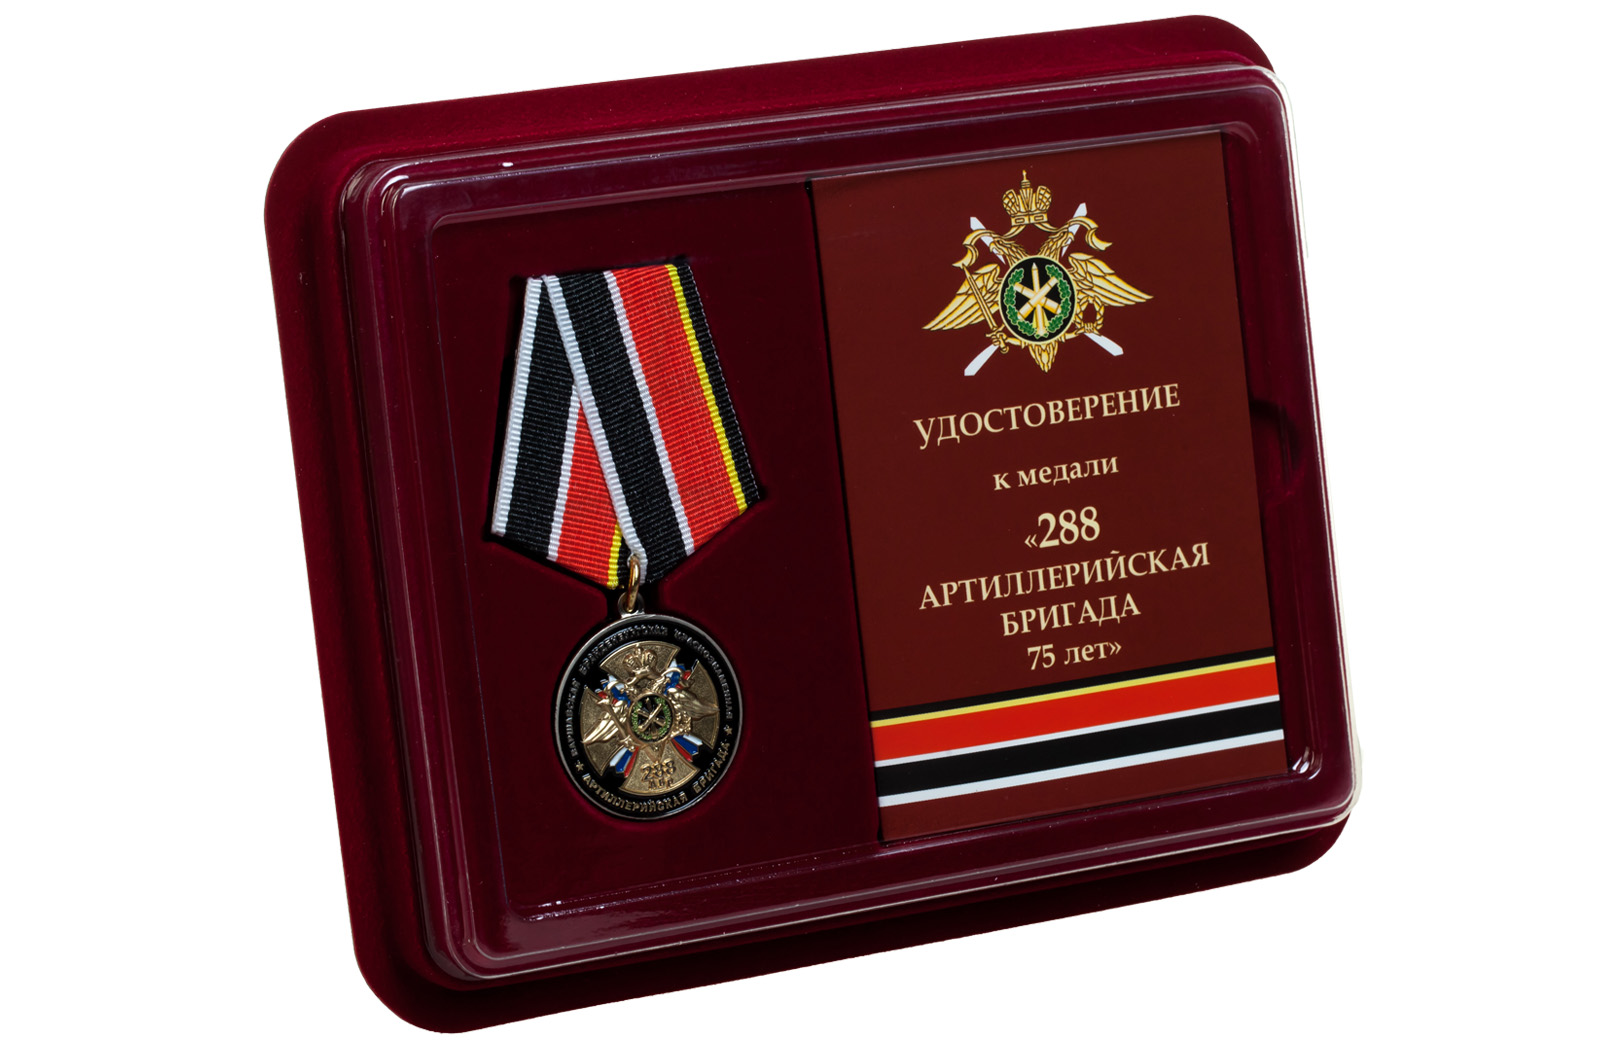 Купить памятную медаль 75 лет 288-ой Артиллерийской бригады выгодно оптом